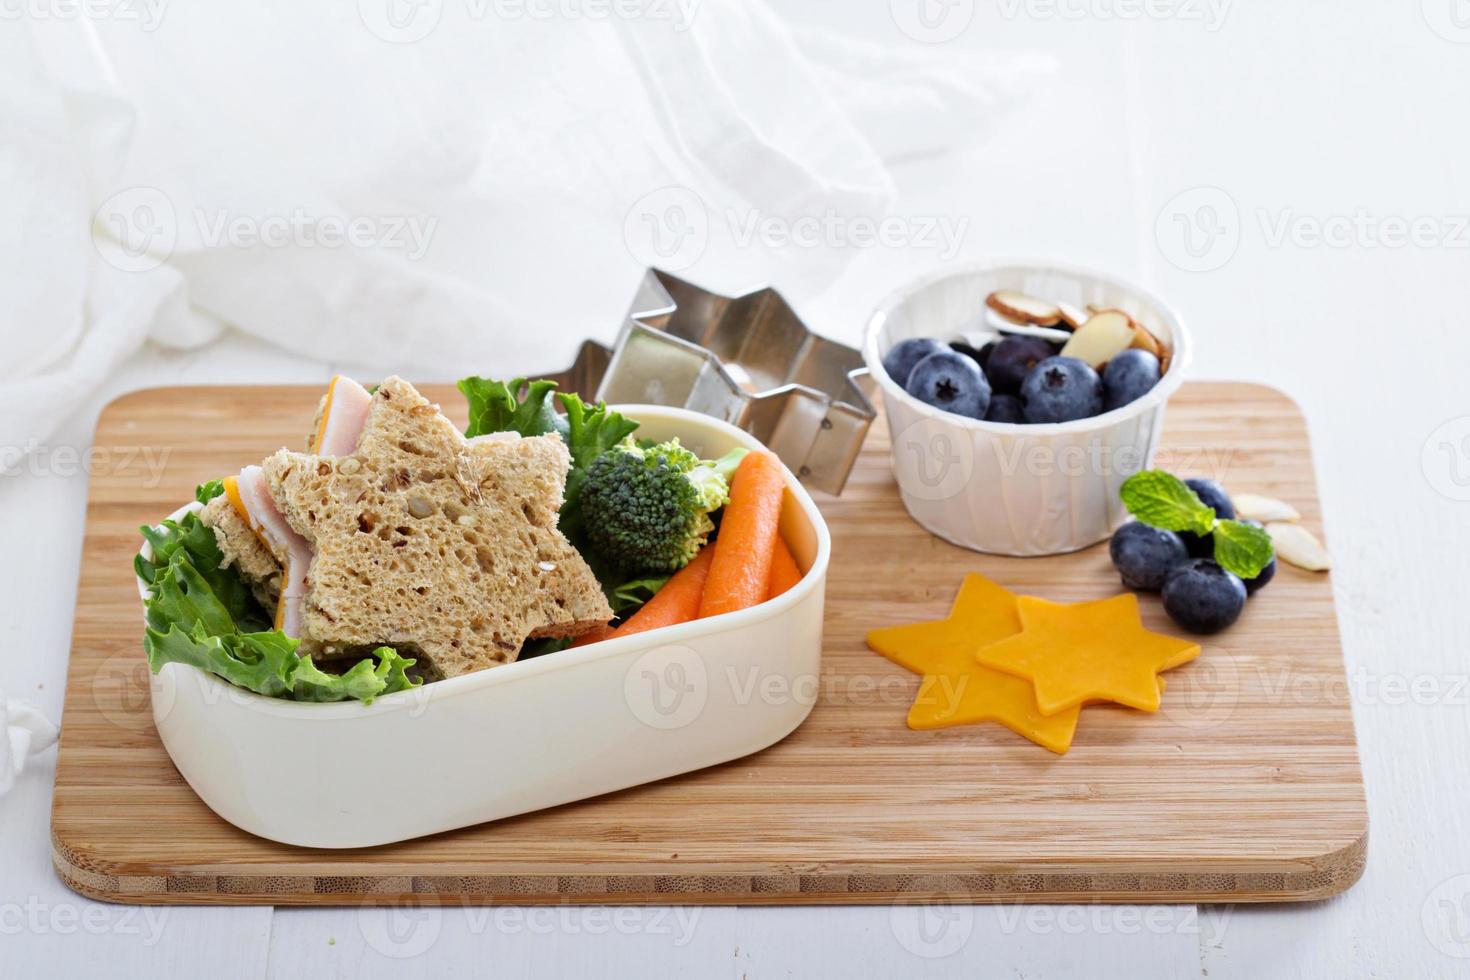 Brotdose mit Sandwich und Salat foto